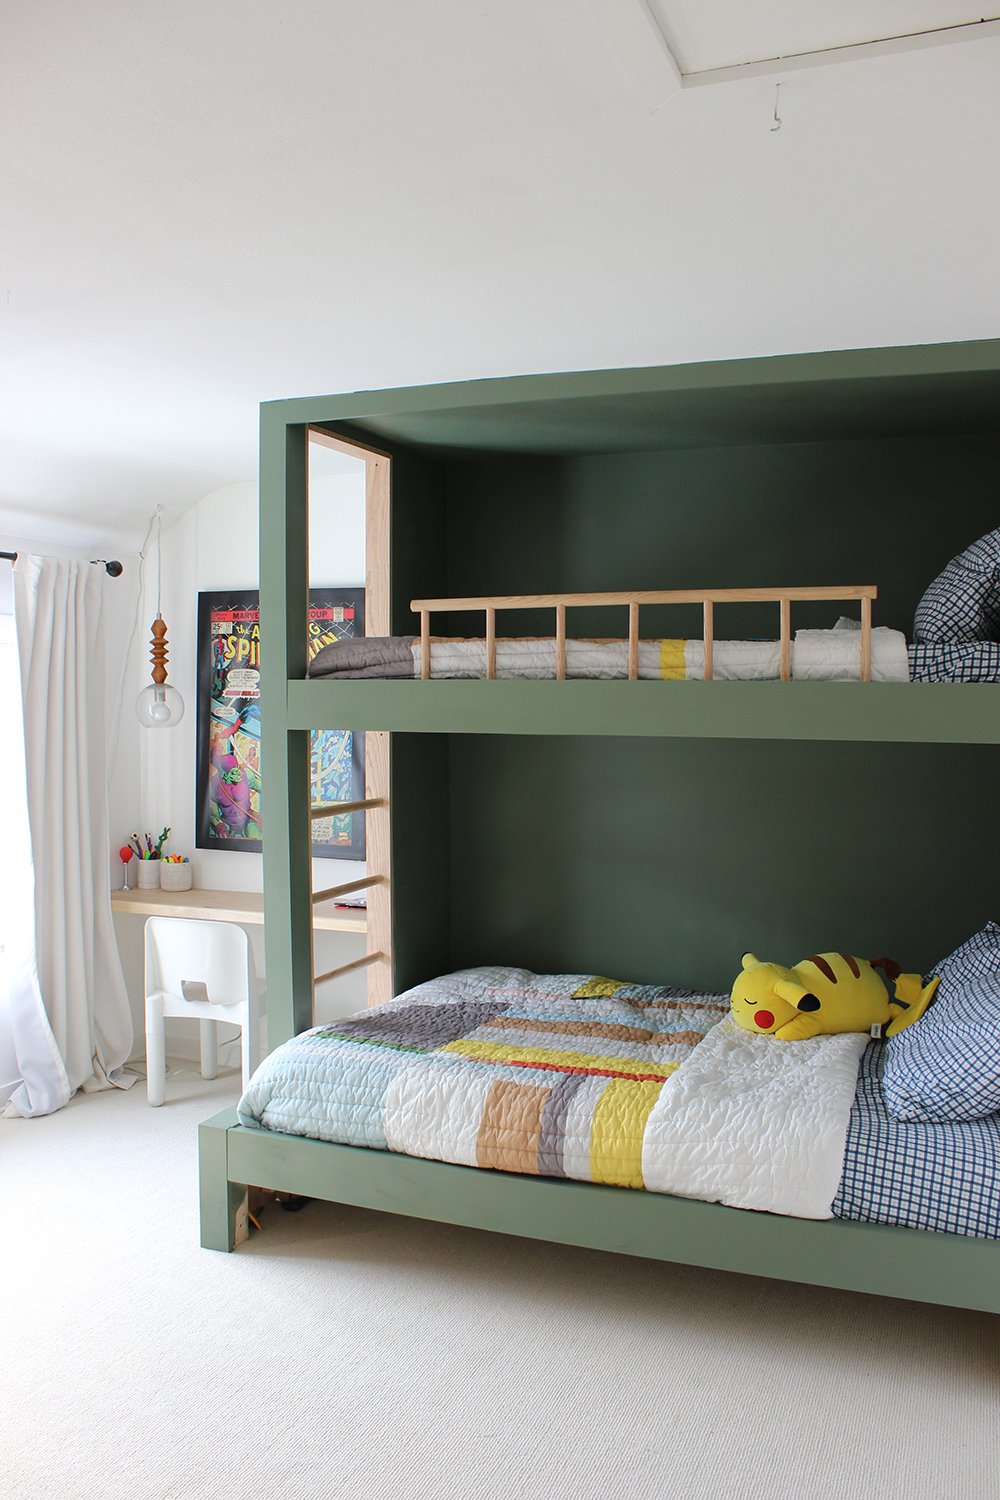 DIY Built-in Bunk Beds — Lauren Koster Creative